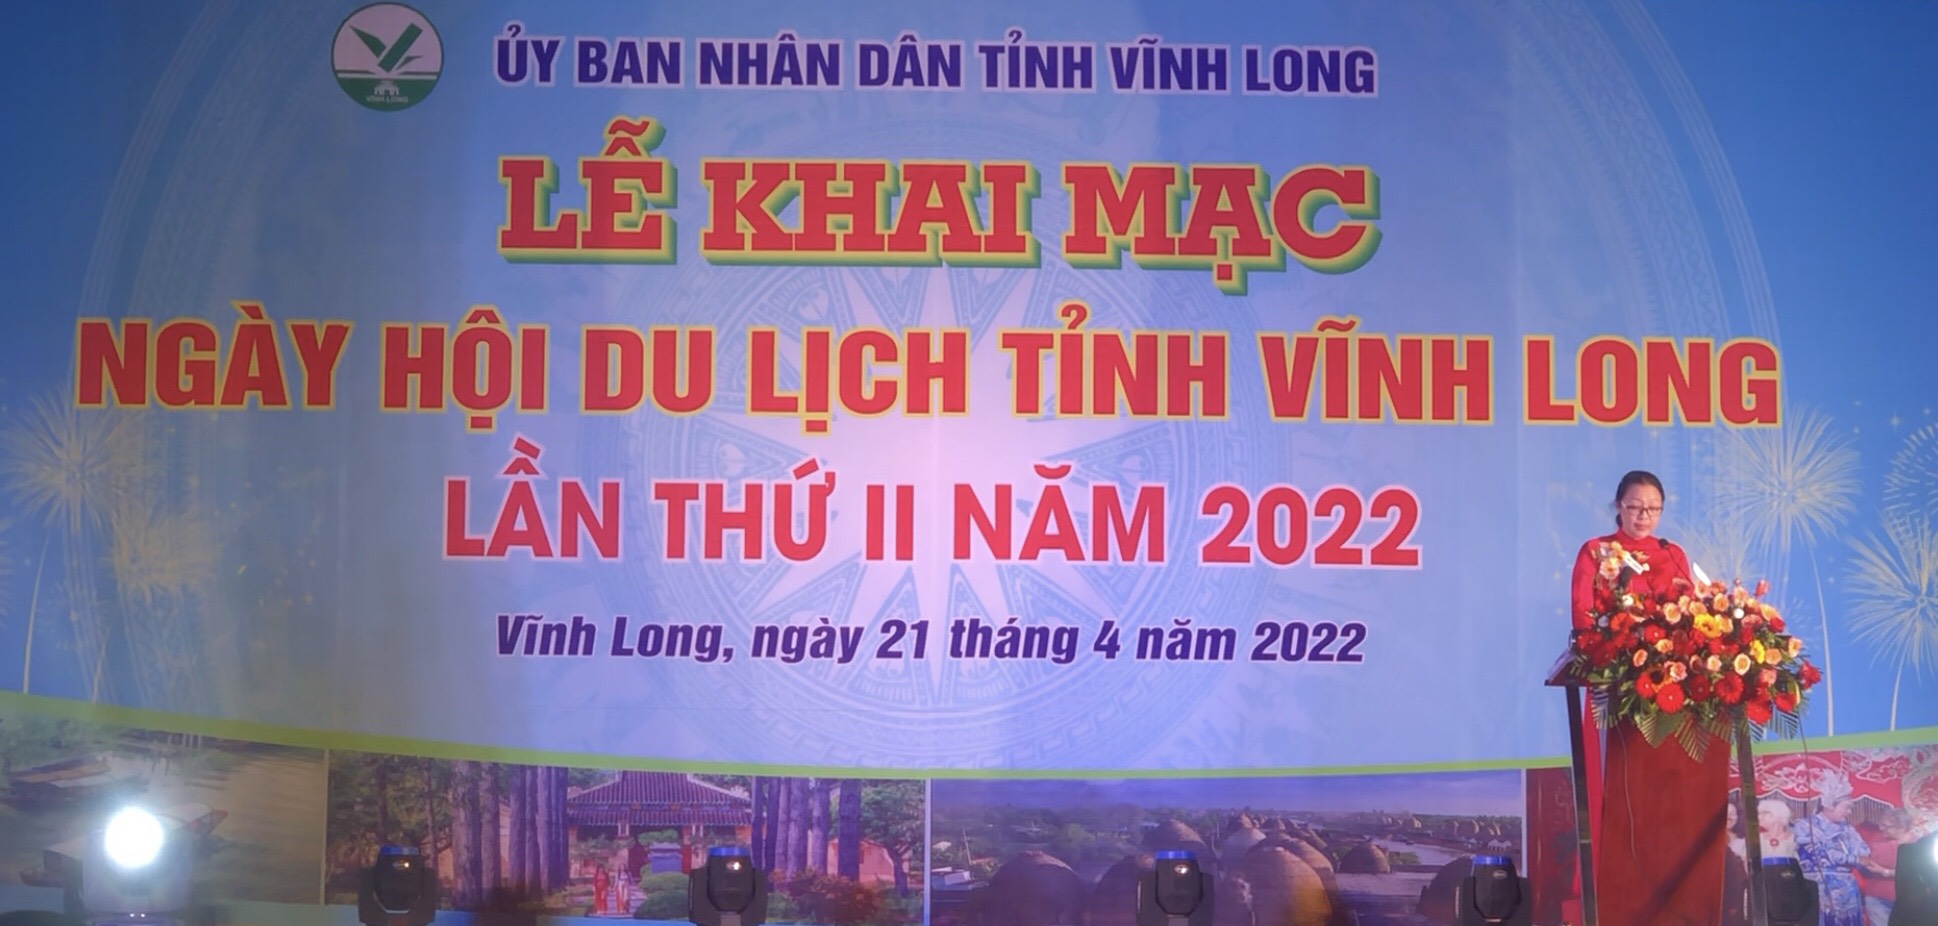 KHAI MẠC NGÀY HỘI DU LỊCH TỈNH VĨNH LONG LẦN II NĂM 2022